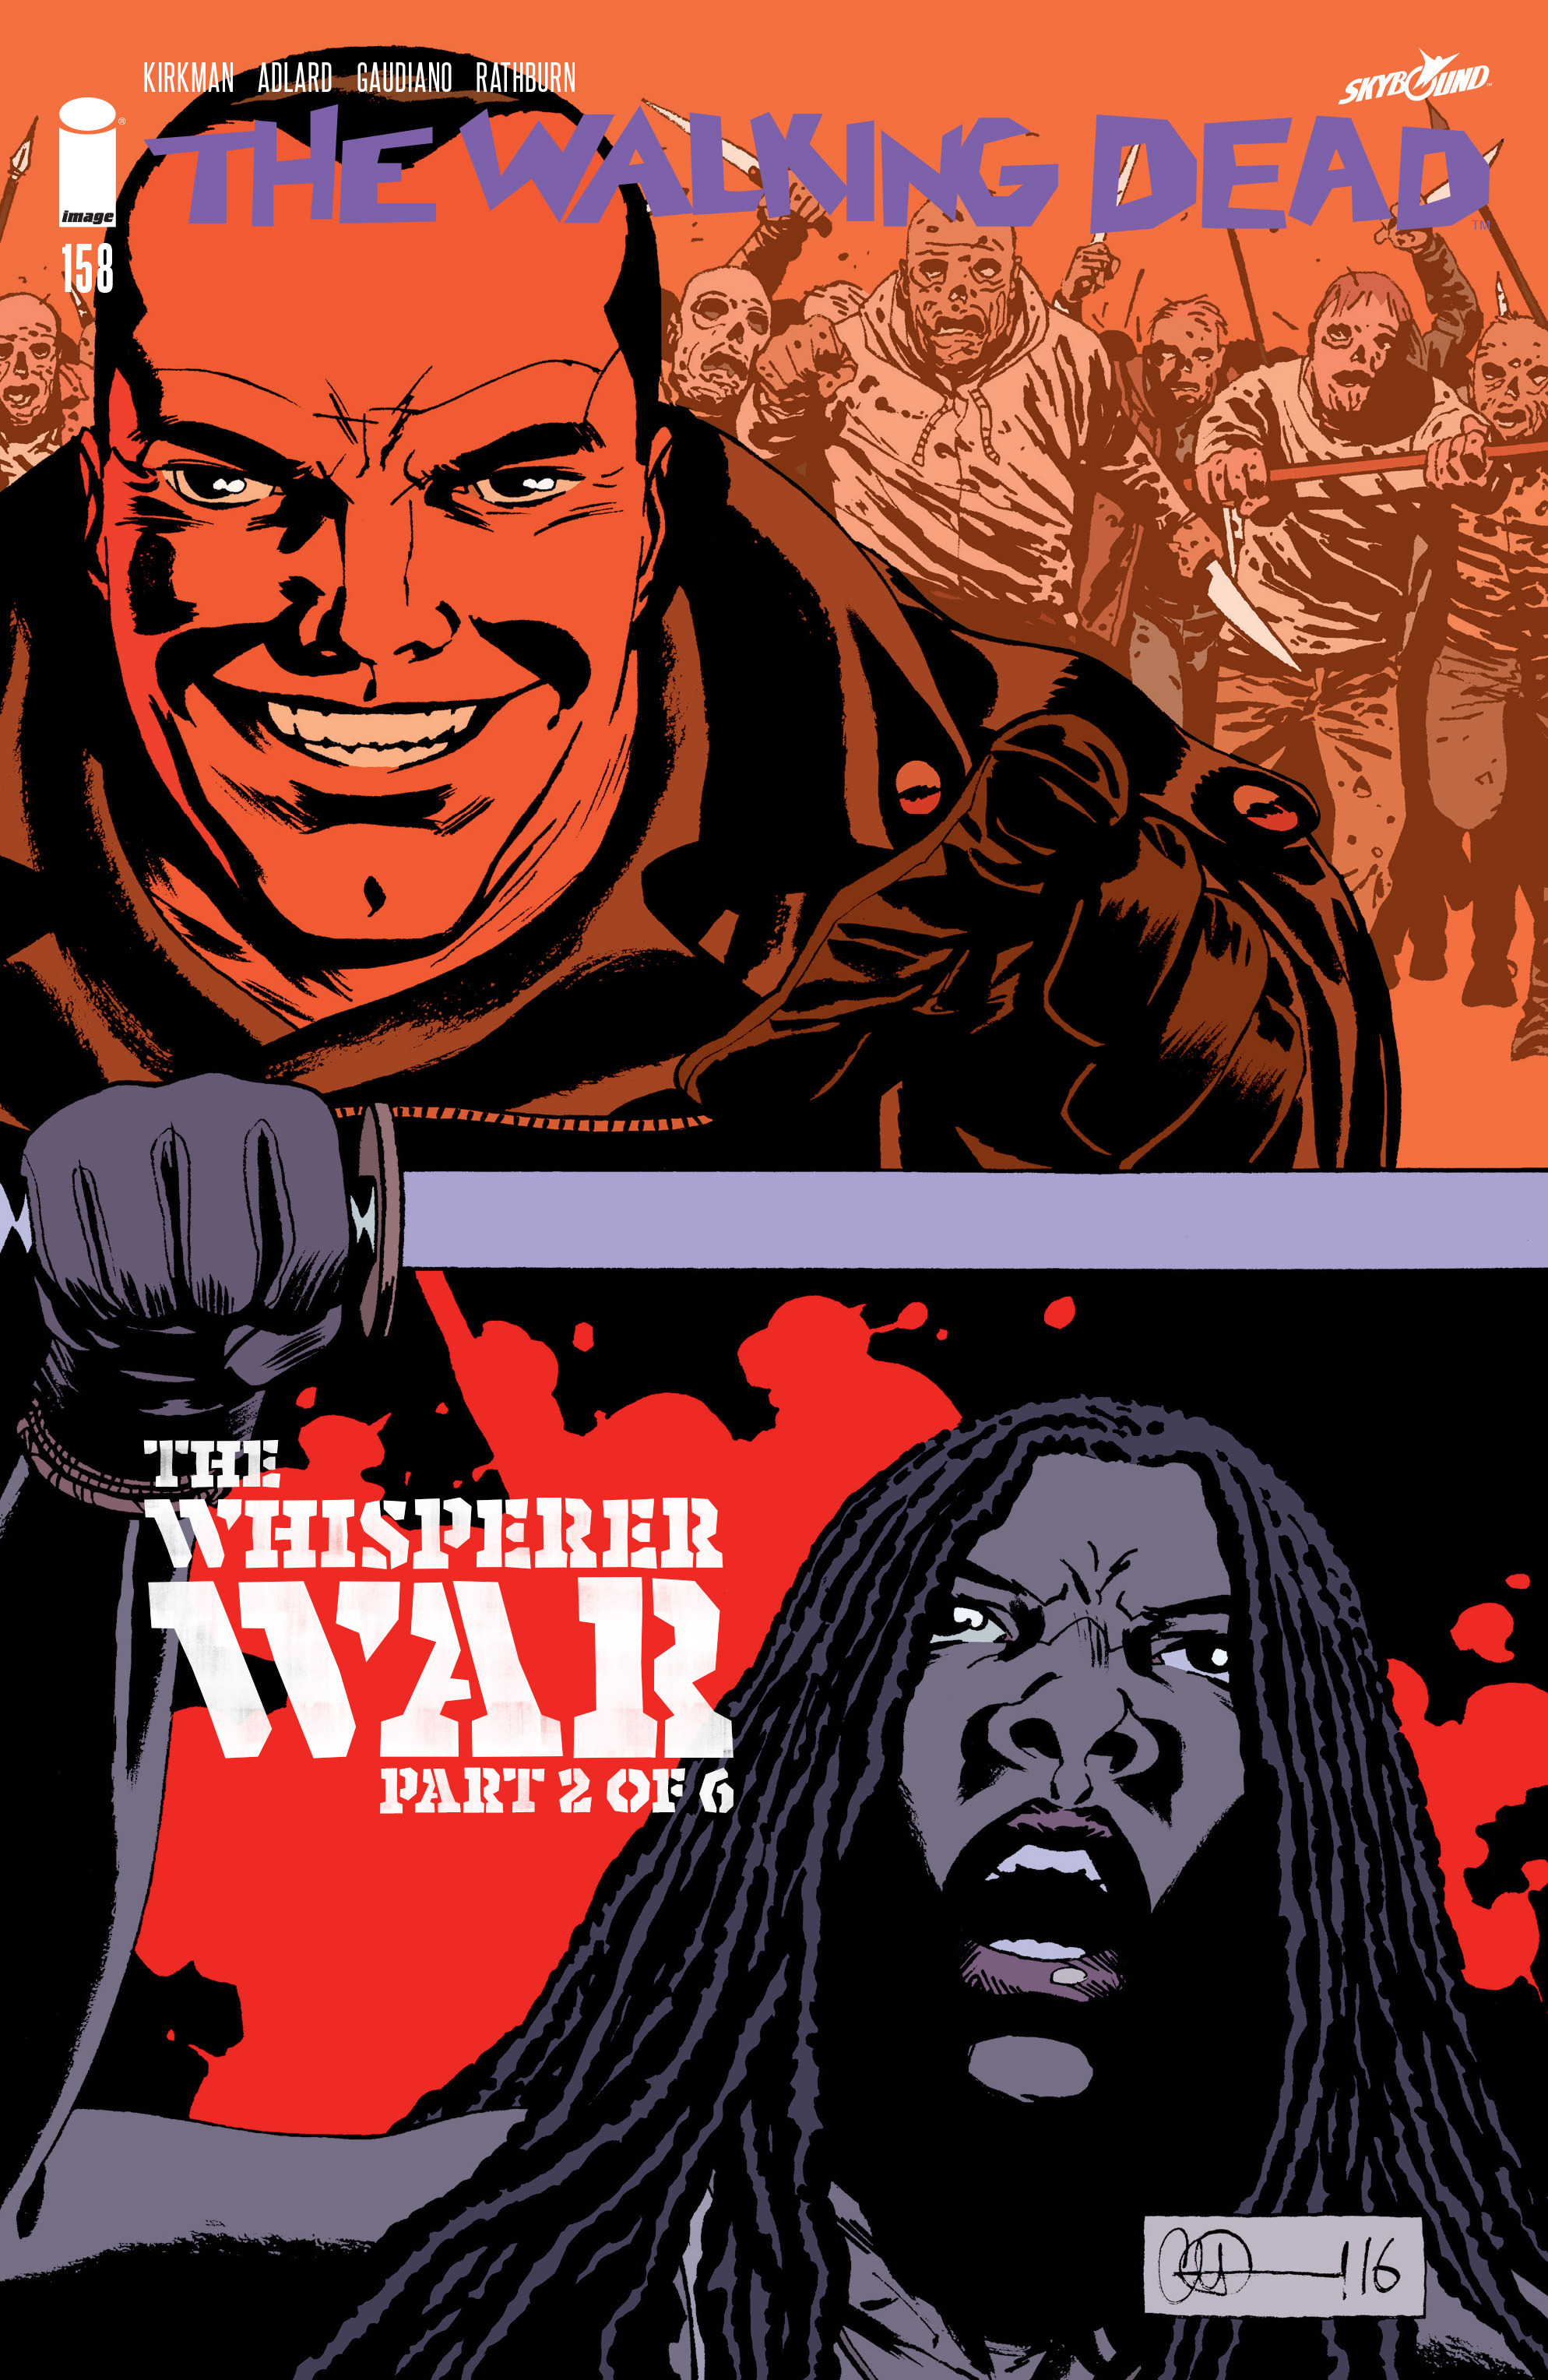 Read online The Walking Dead comic -  Issue #158 - 1